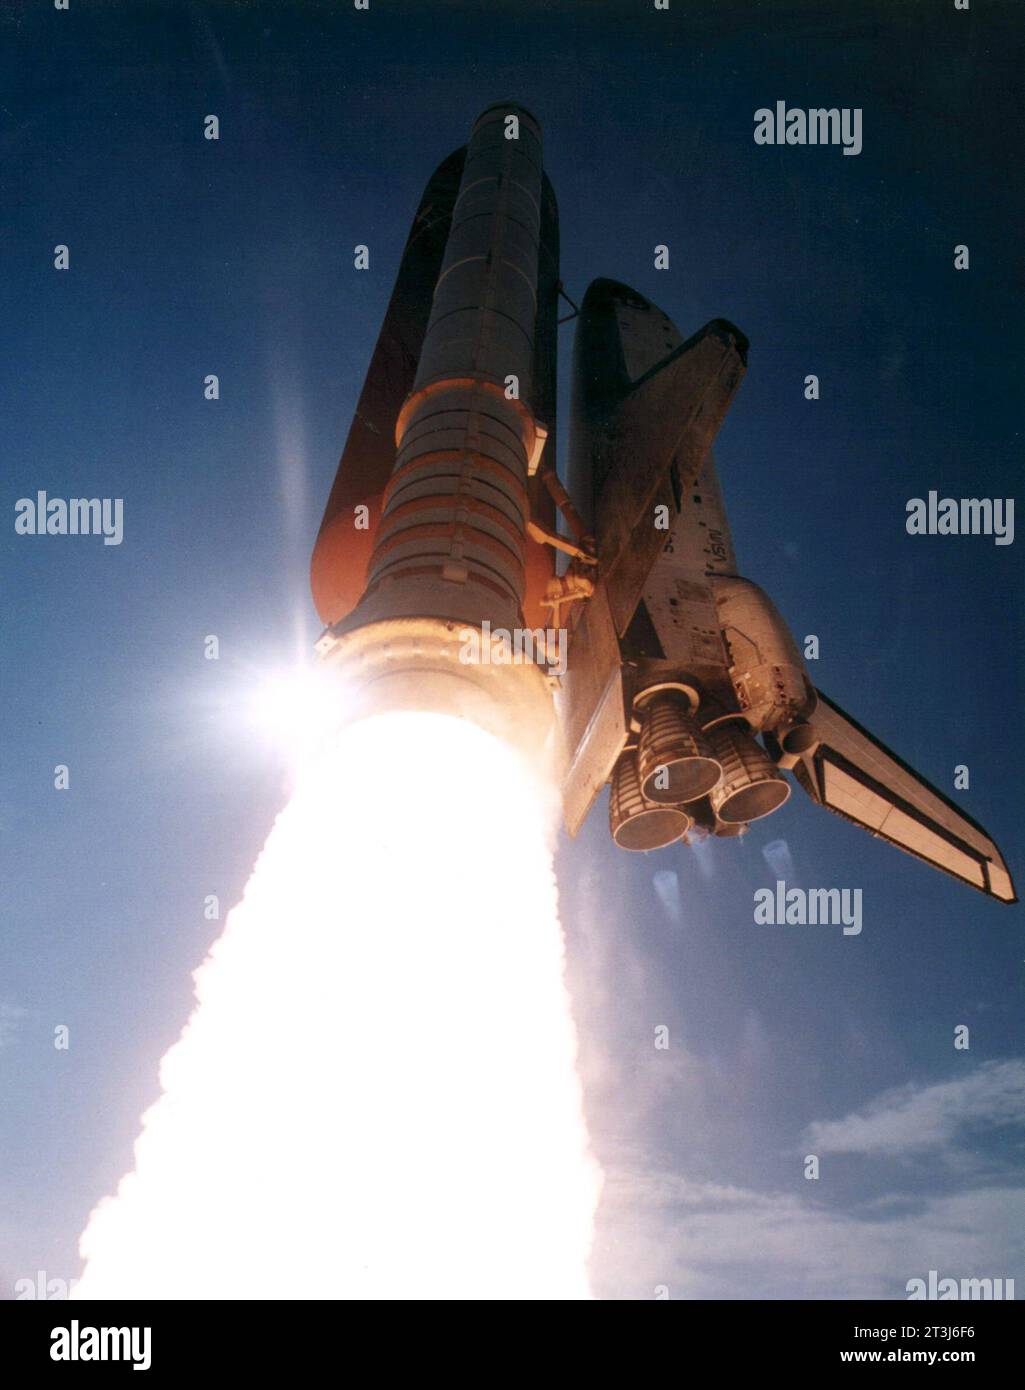 Lancement de STS-70, navette spatiale la mission STS-70 de Discovery a été lancée le 13 juillet 1995 depuis le Kennedy Space Center. ÉTATS-UNIS Banque D'Images